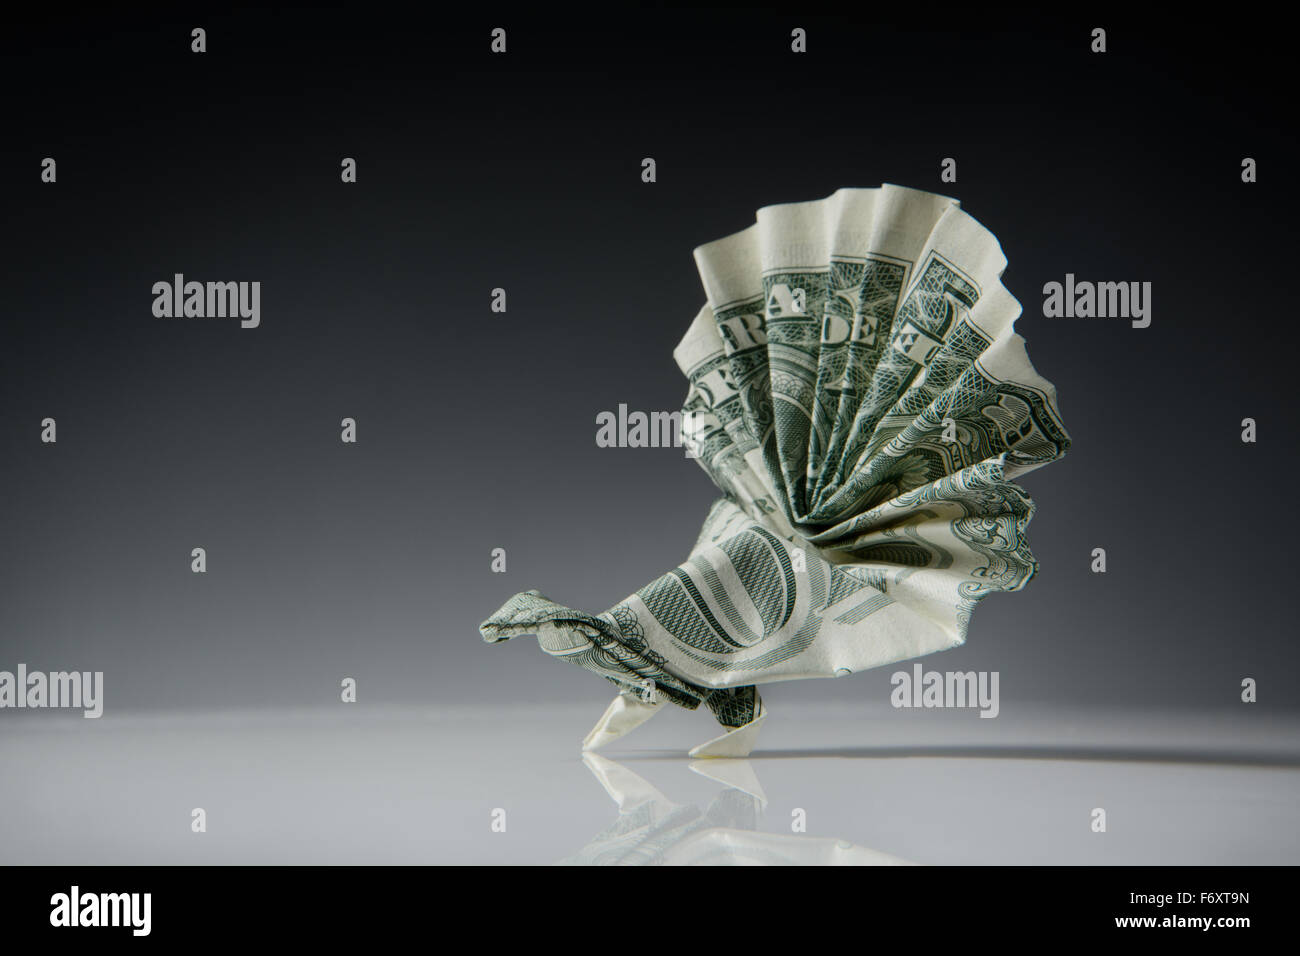 Stillleben-Bild von einem Origami-Pfauen machen von einem US-Dollar-note Stockfoto